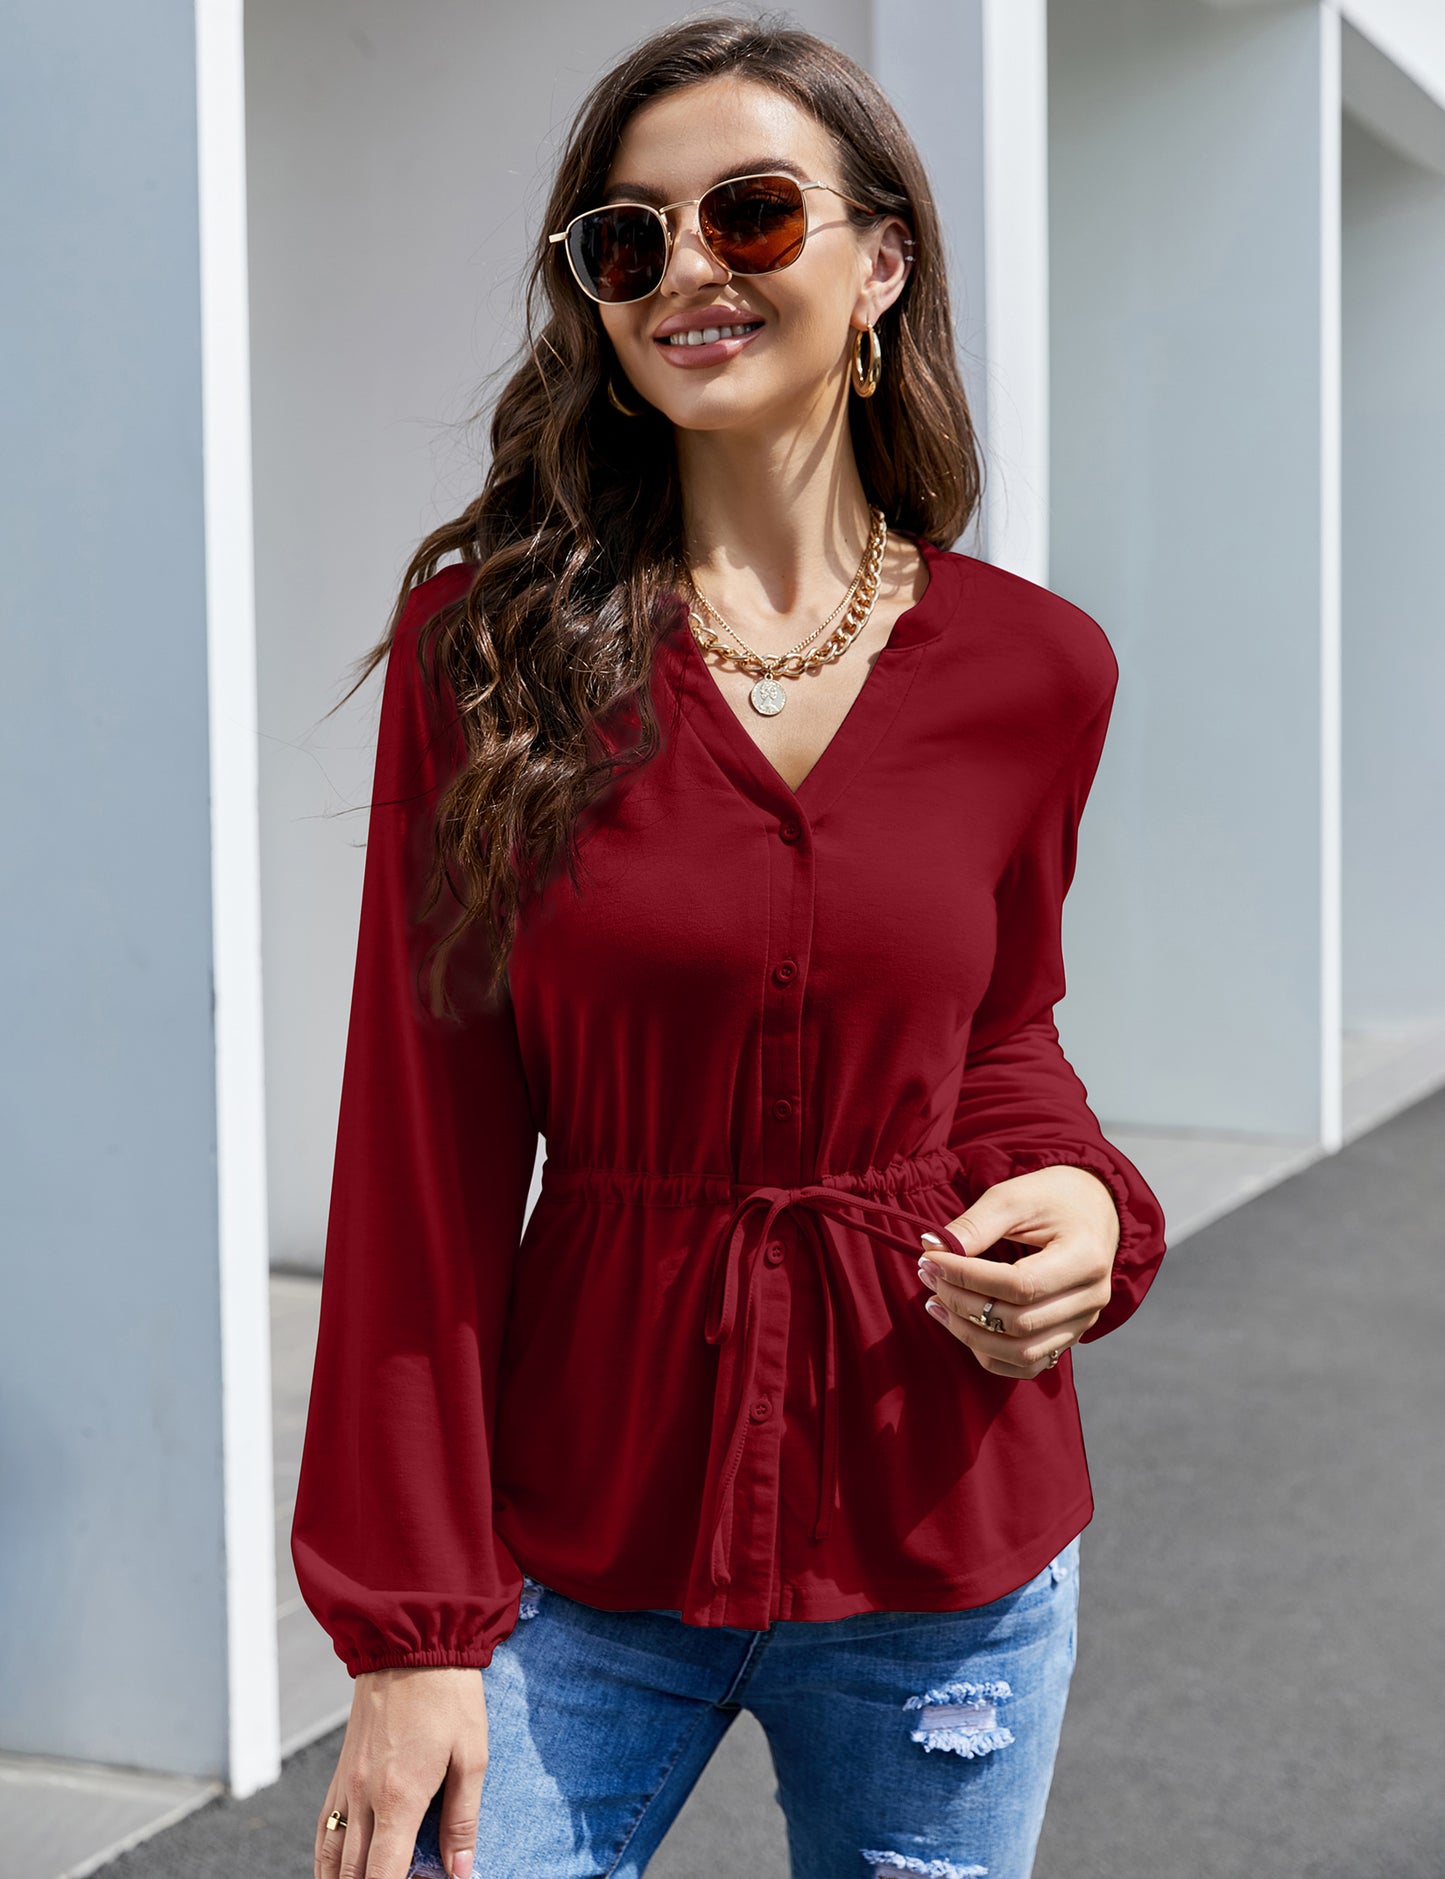 YESFASHION Women's Red Top Button Ruffle Long Sleeve Shirt Red